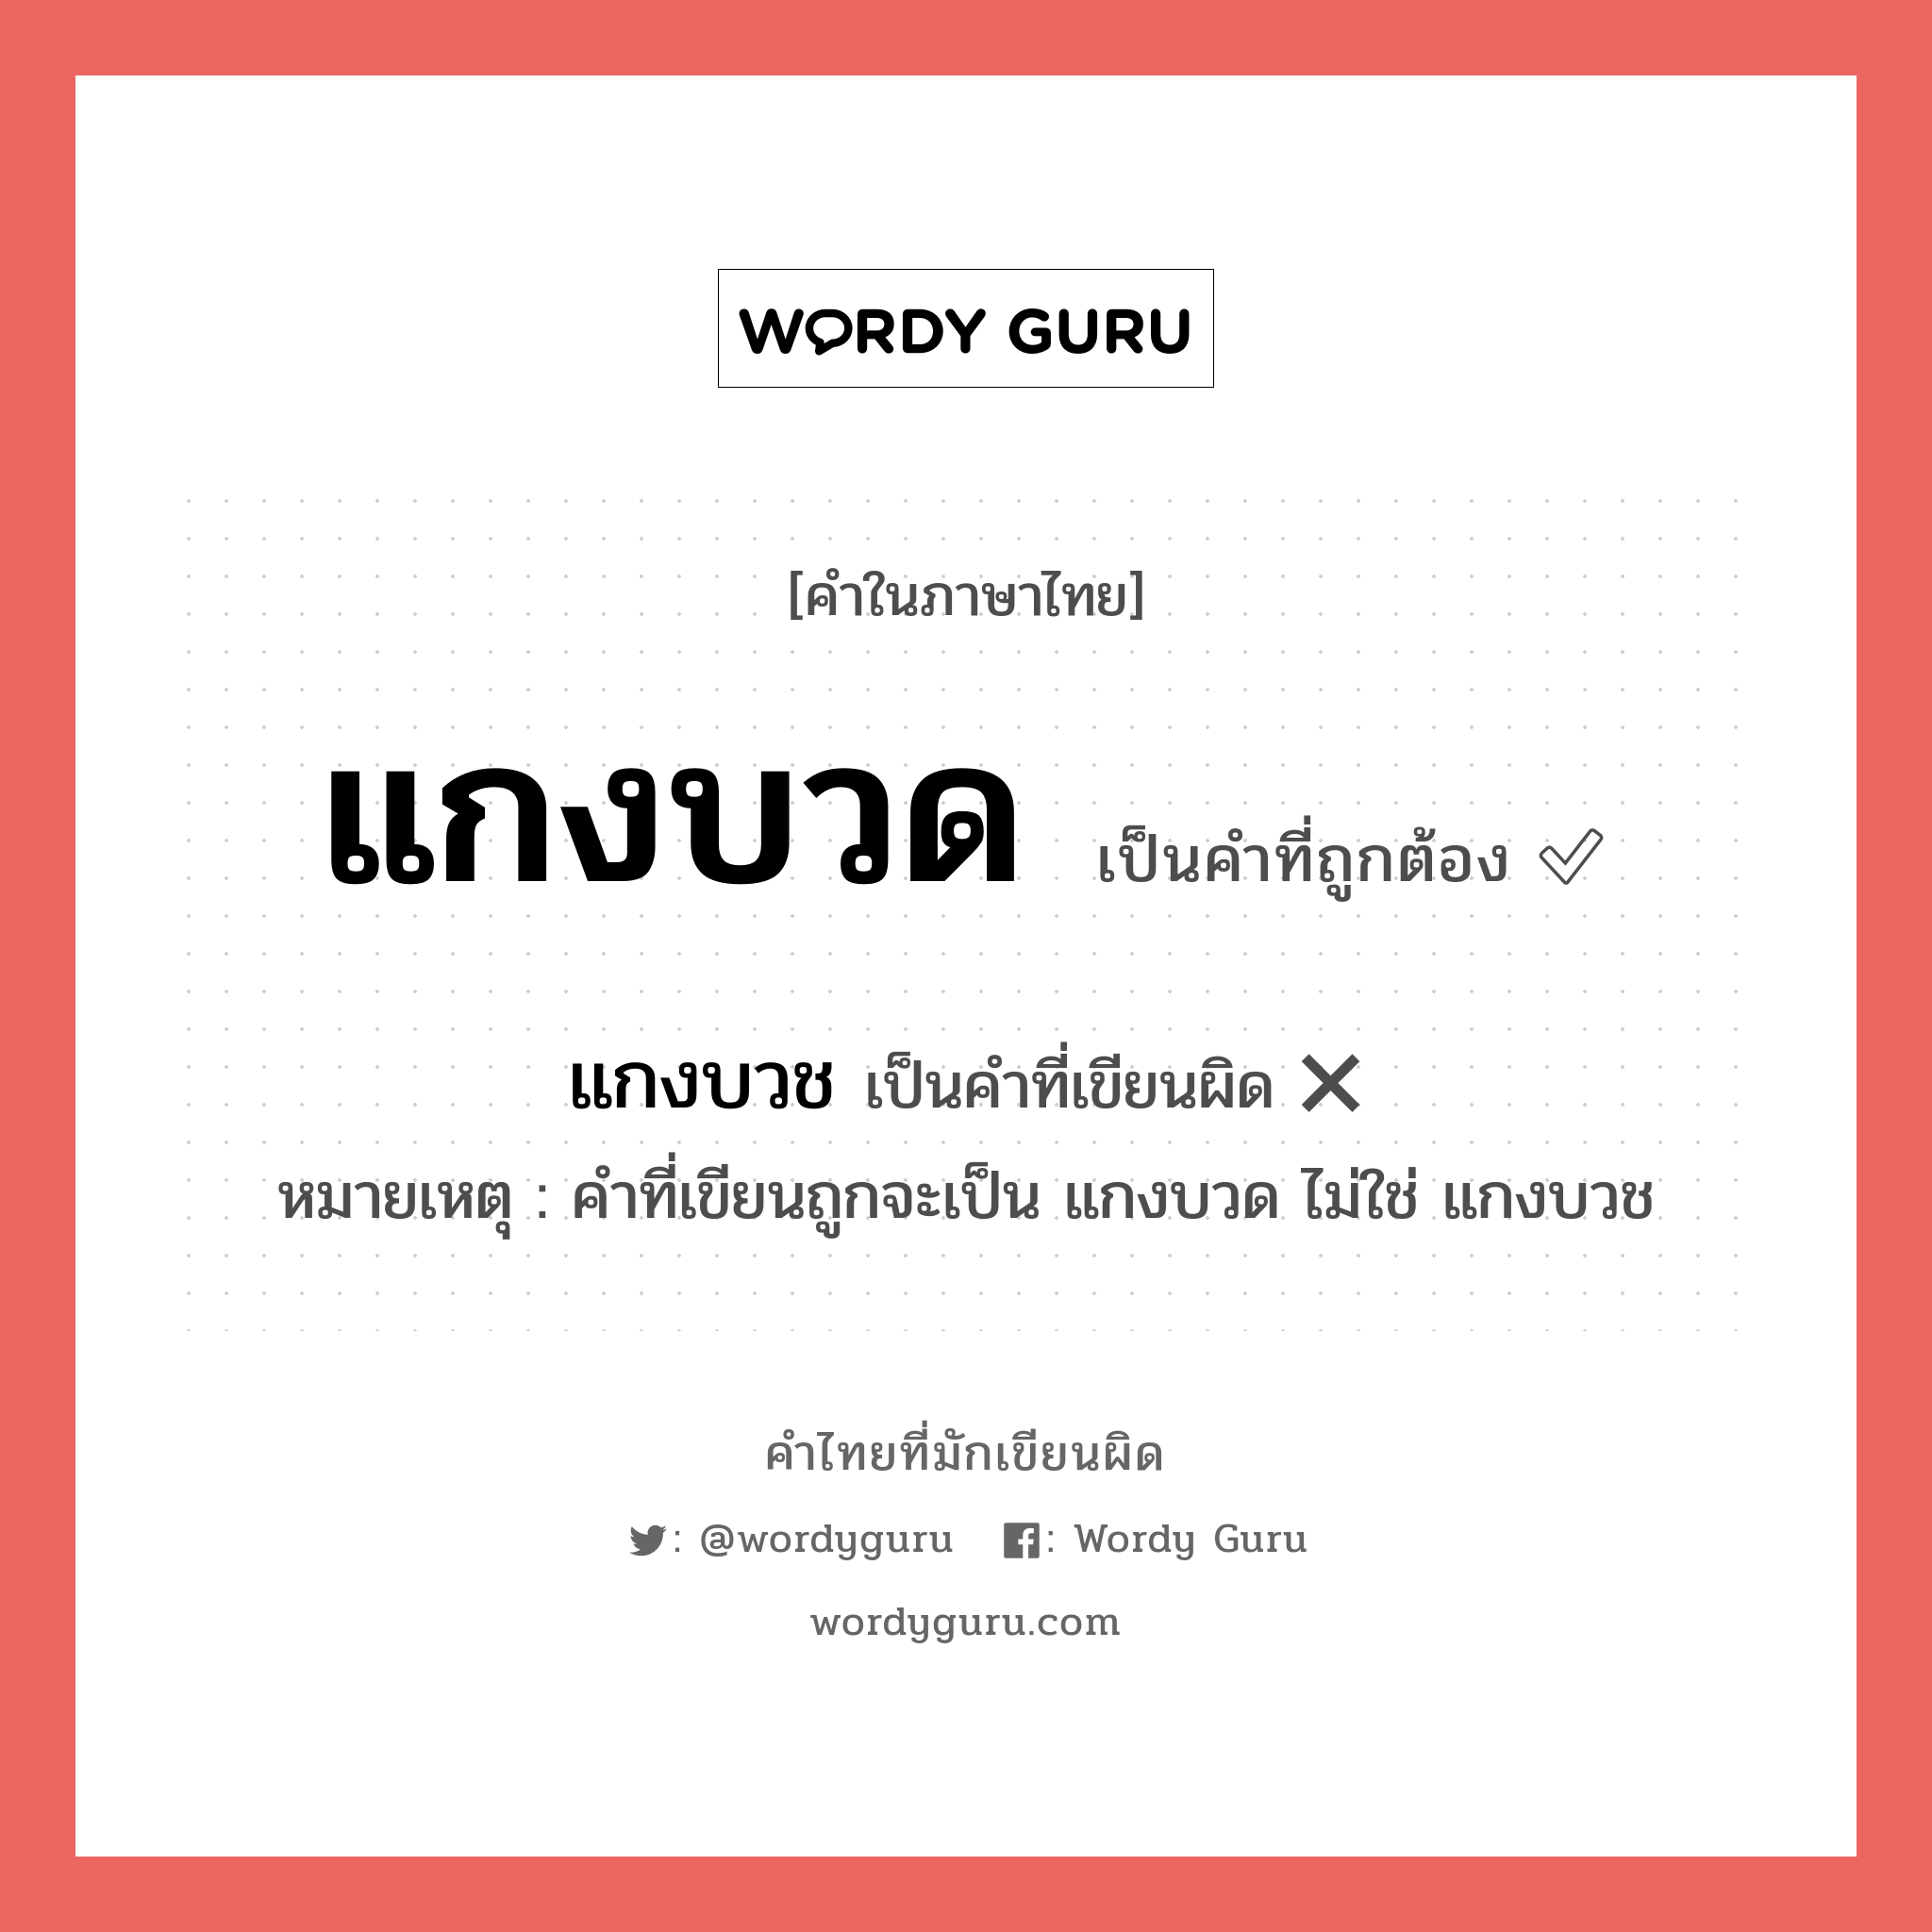 แกงบวด หรือ แกงบวช คำไหนเขียนถูก?, คำในภาษาไทยที่มักเขียนผิด แกงบวด คำที่ผิด ❌ แกงบวช หมายเหตุ คำที่เขียนถูกจะเป็น แกงบวด ไม่ใช่ แกงบวช